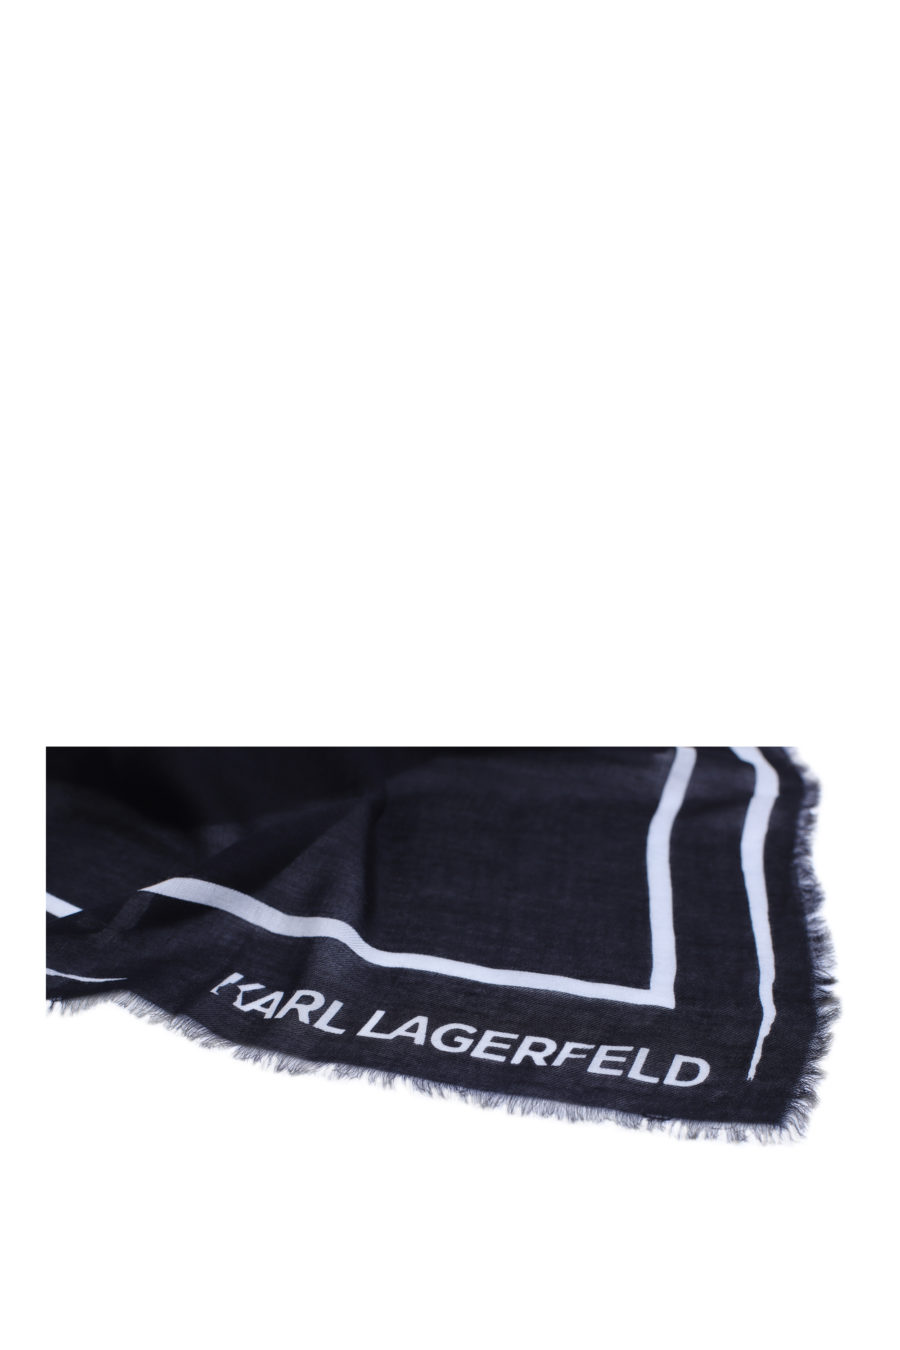 Bufanda negra con logo blanco grande - IMG 9139